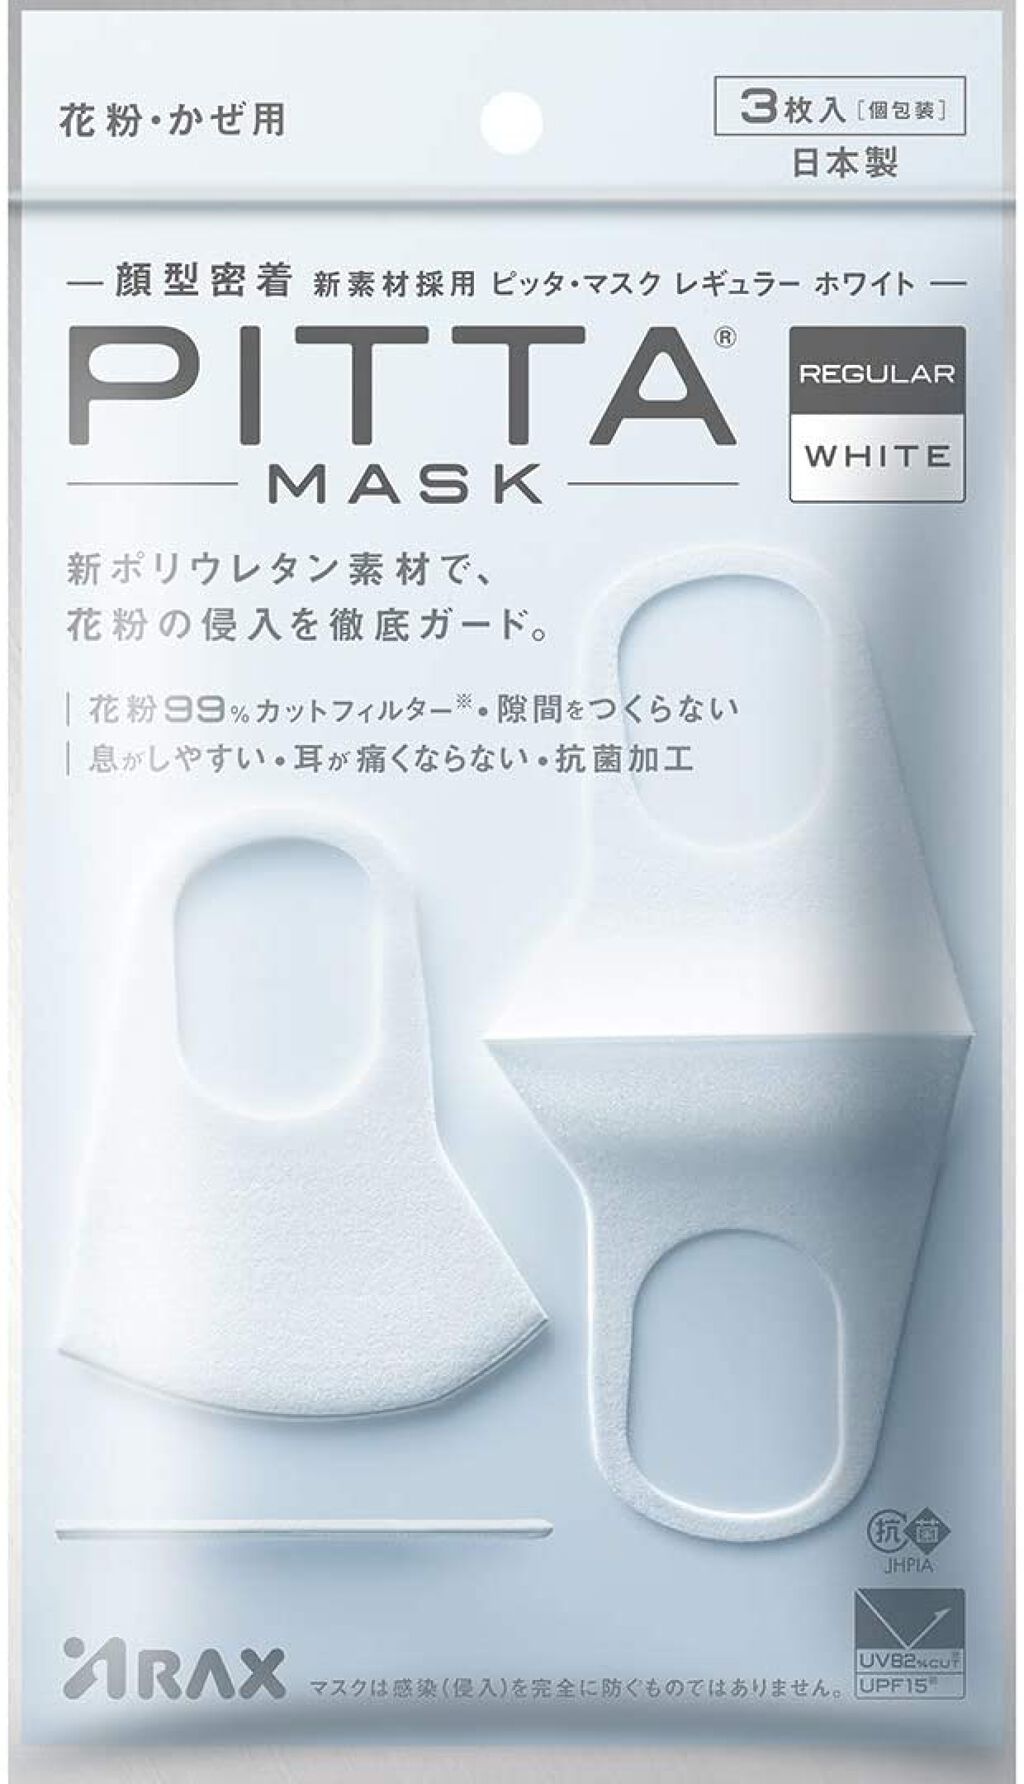 迅速な対応で商品をお届け致します PITTA MASKピッタマスク スモール 新品未使用未開封 バラ売不可